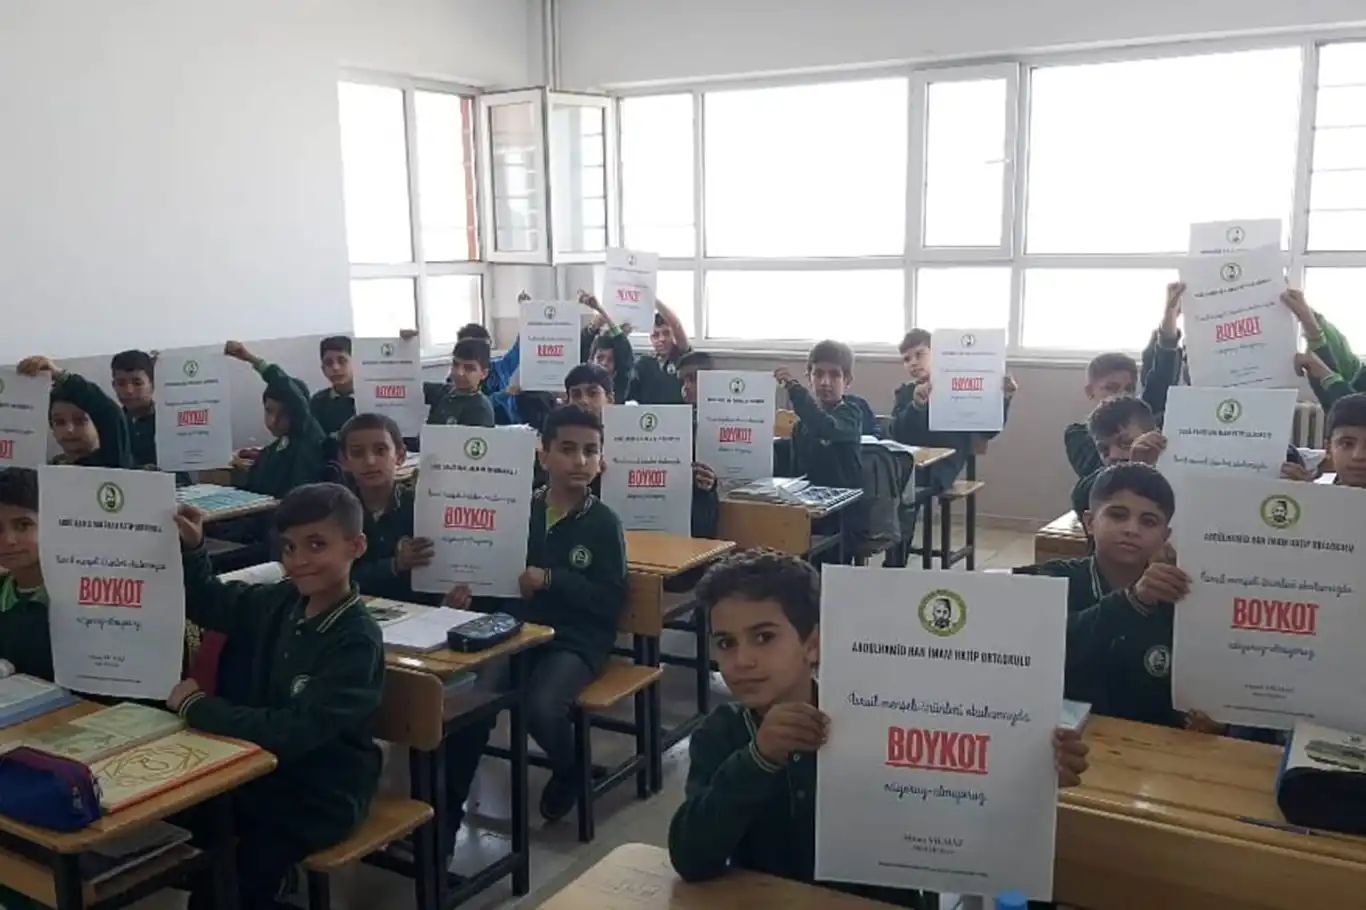 Şanlıurfa'da imam hatip ortaokulundan boykot çağrısı